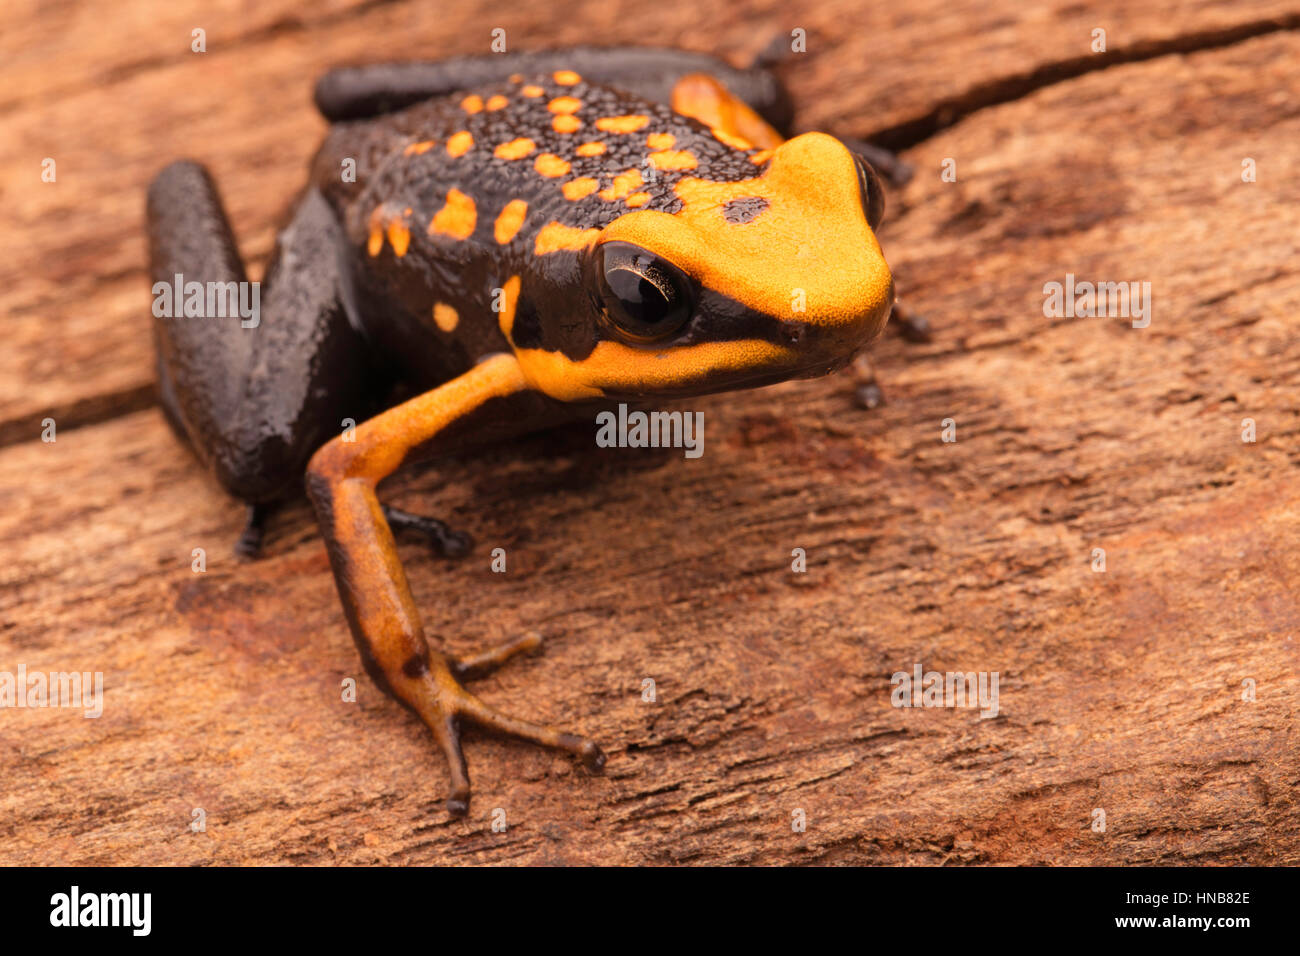 poison dart or arrow frog, Ameerega silverstonei. Orange poisonous animal from the Amazon rain forest of Peru. Stock Photo